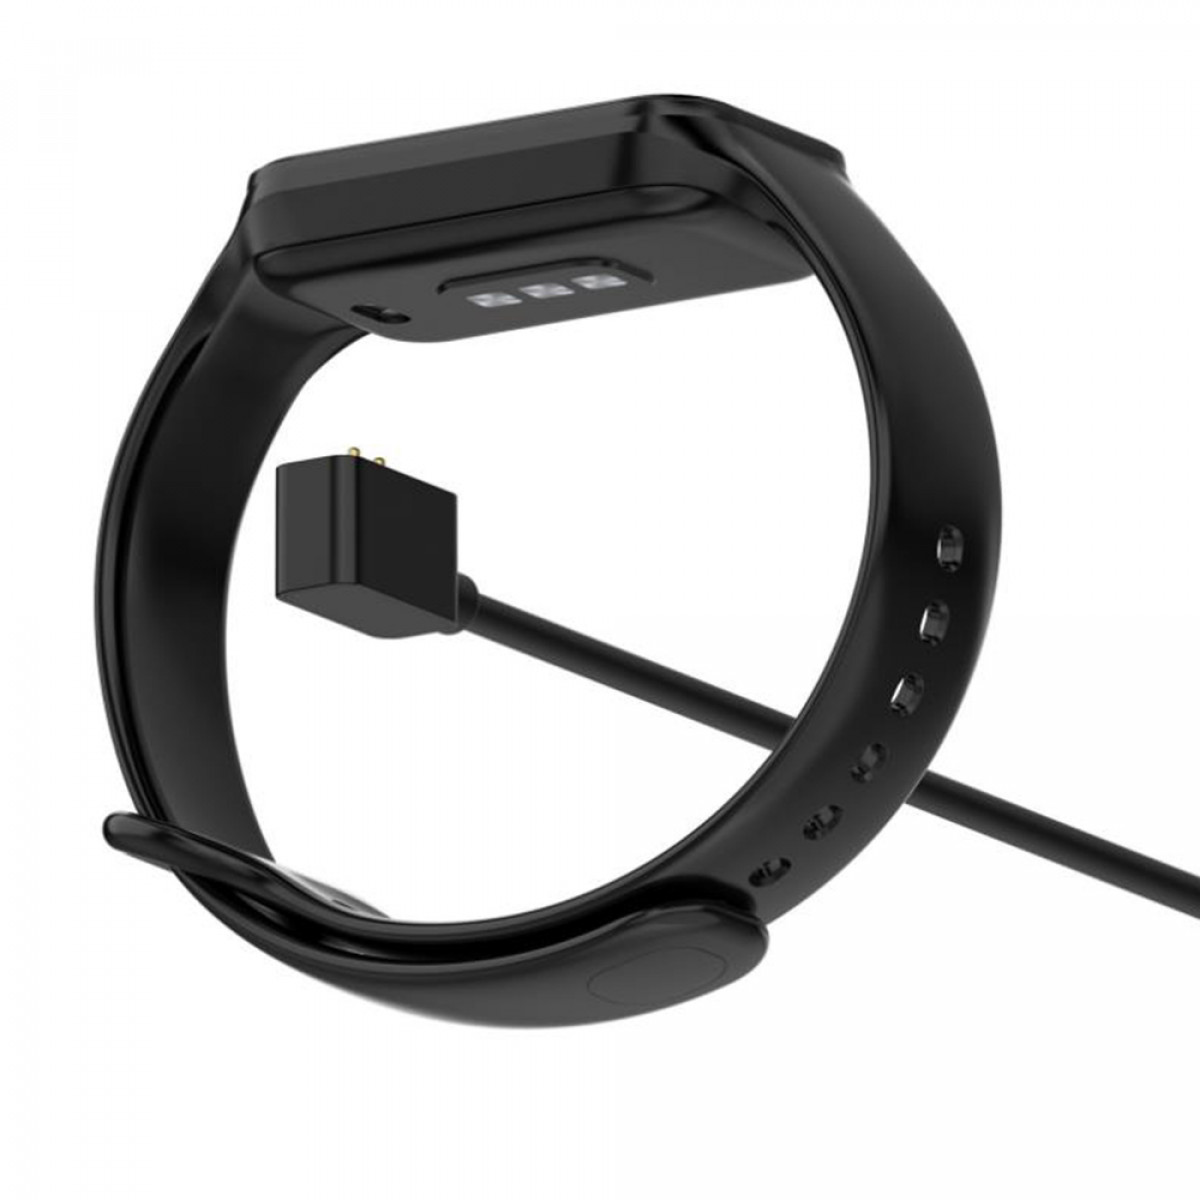 INF Band / Ladestation, Schwarz 8 Redmi für Mi Band 2, USB-Smartwatch-Ladegerät